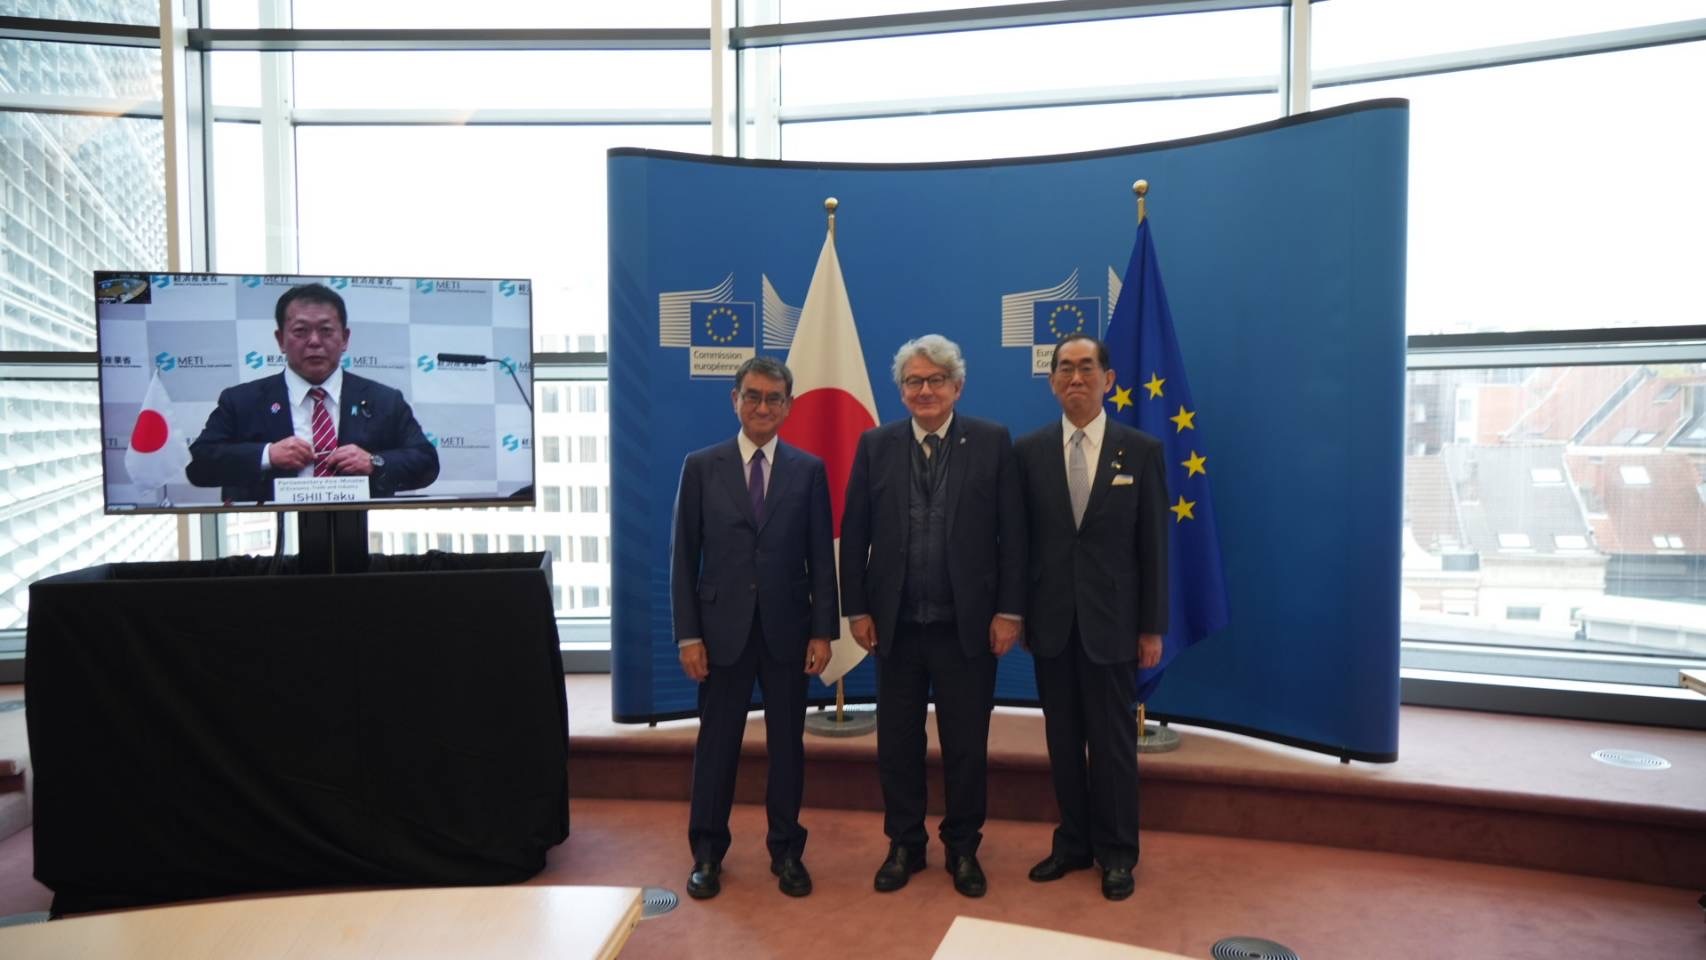 日EUデジタルパートナーシップ閣僚級会合のグループ写真。右から、河野大臣、ィエリー・ブルトン欧州委員、松本総務大臣。右手スクリーンに映るのは石井経済産業大臣政務官。